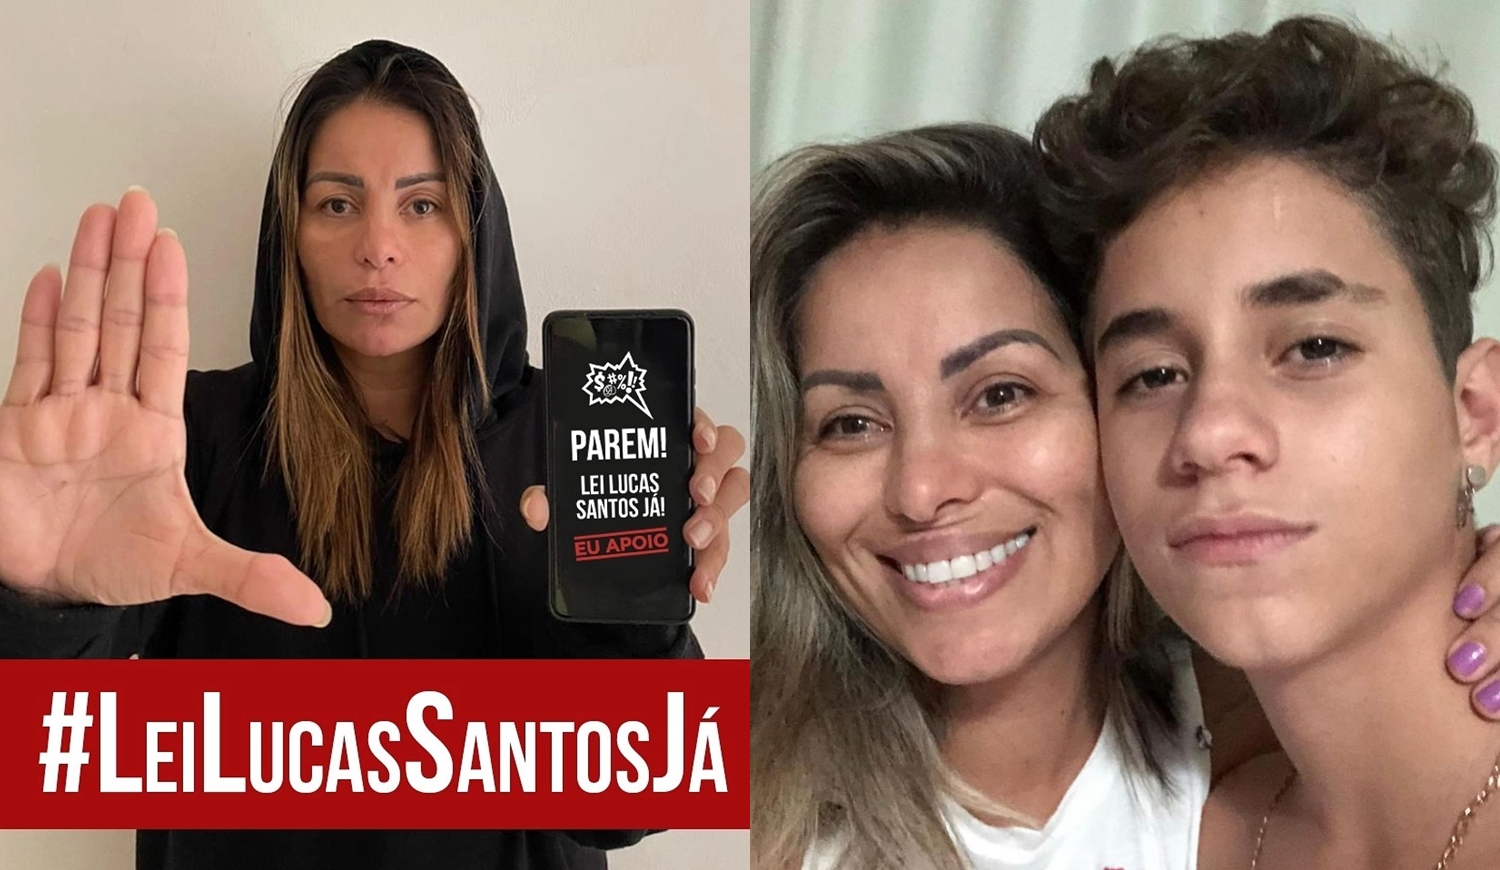 Fotos: uma da artista compartilhando a #LeiLucasSantosJái e outra dela com o seu filho.